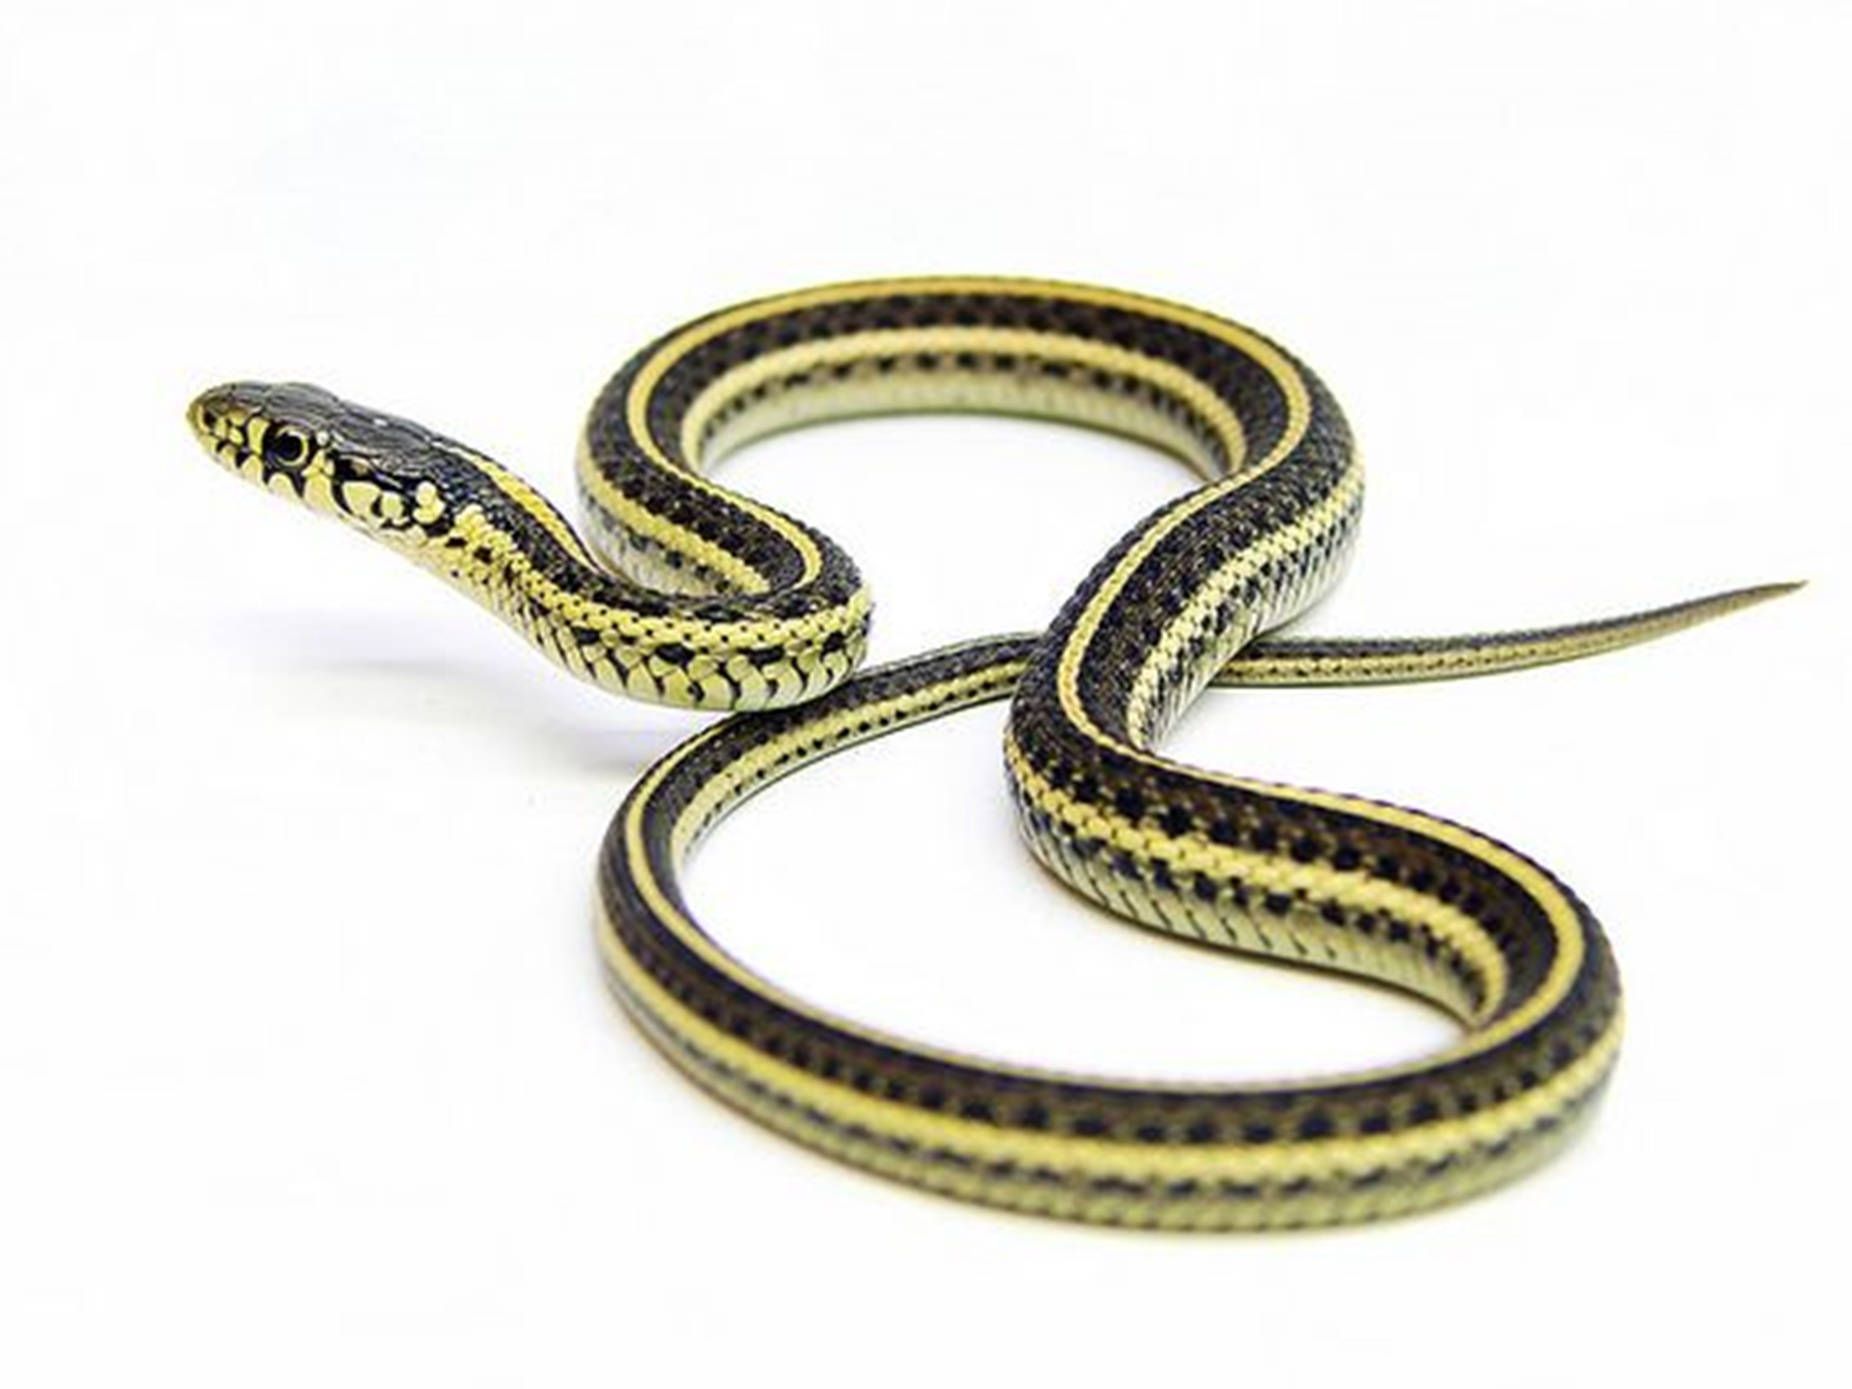 Slender plains garter snake in natural habitat Wallpaper